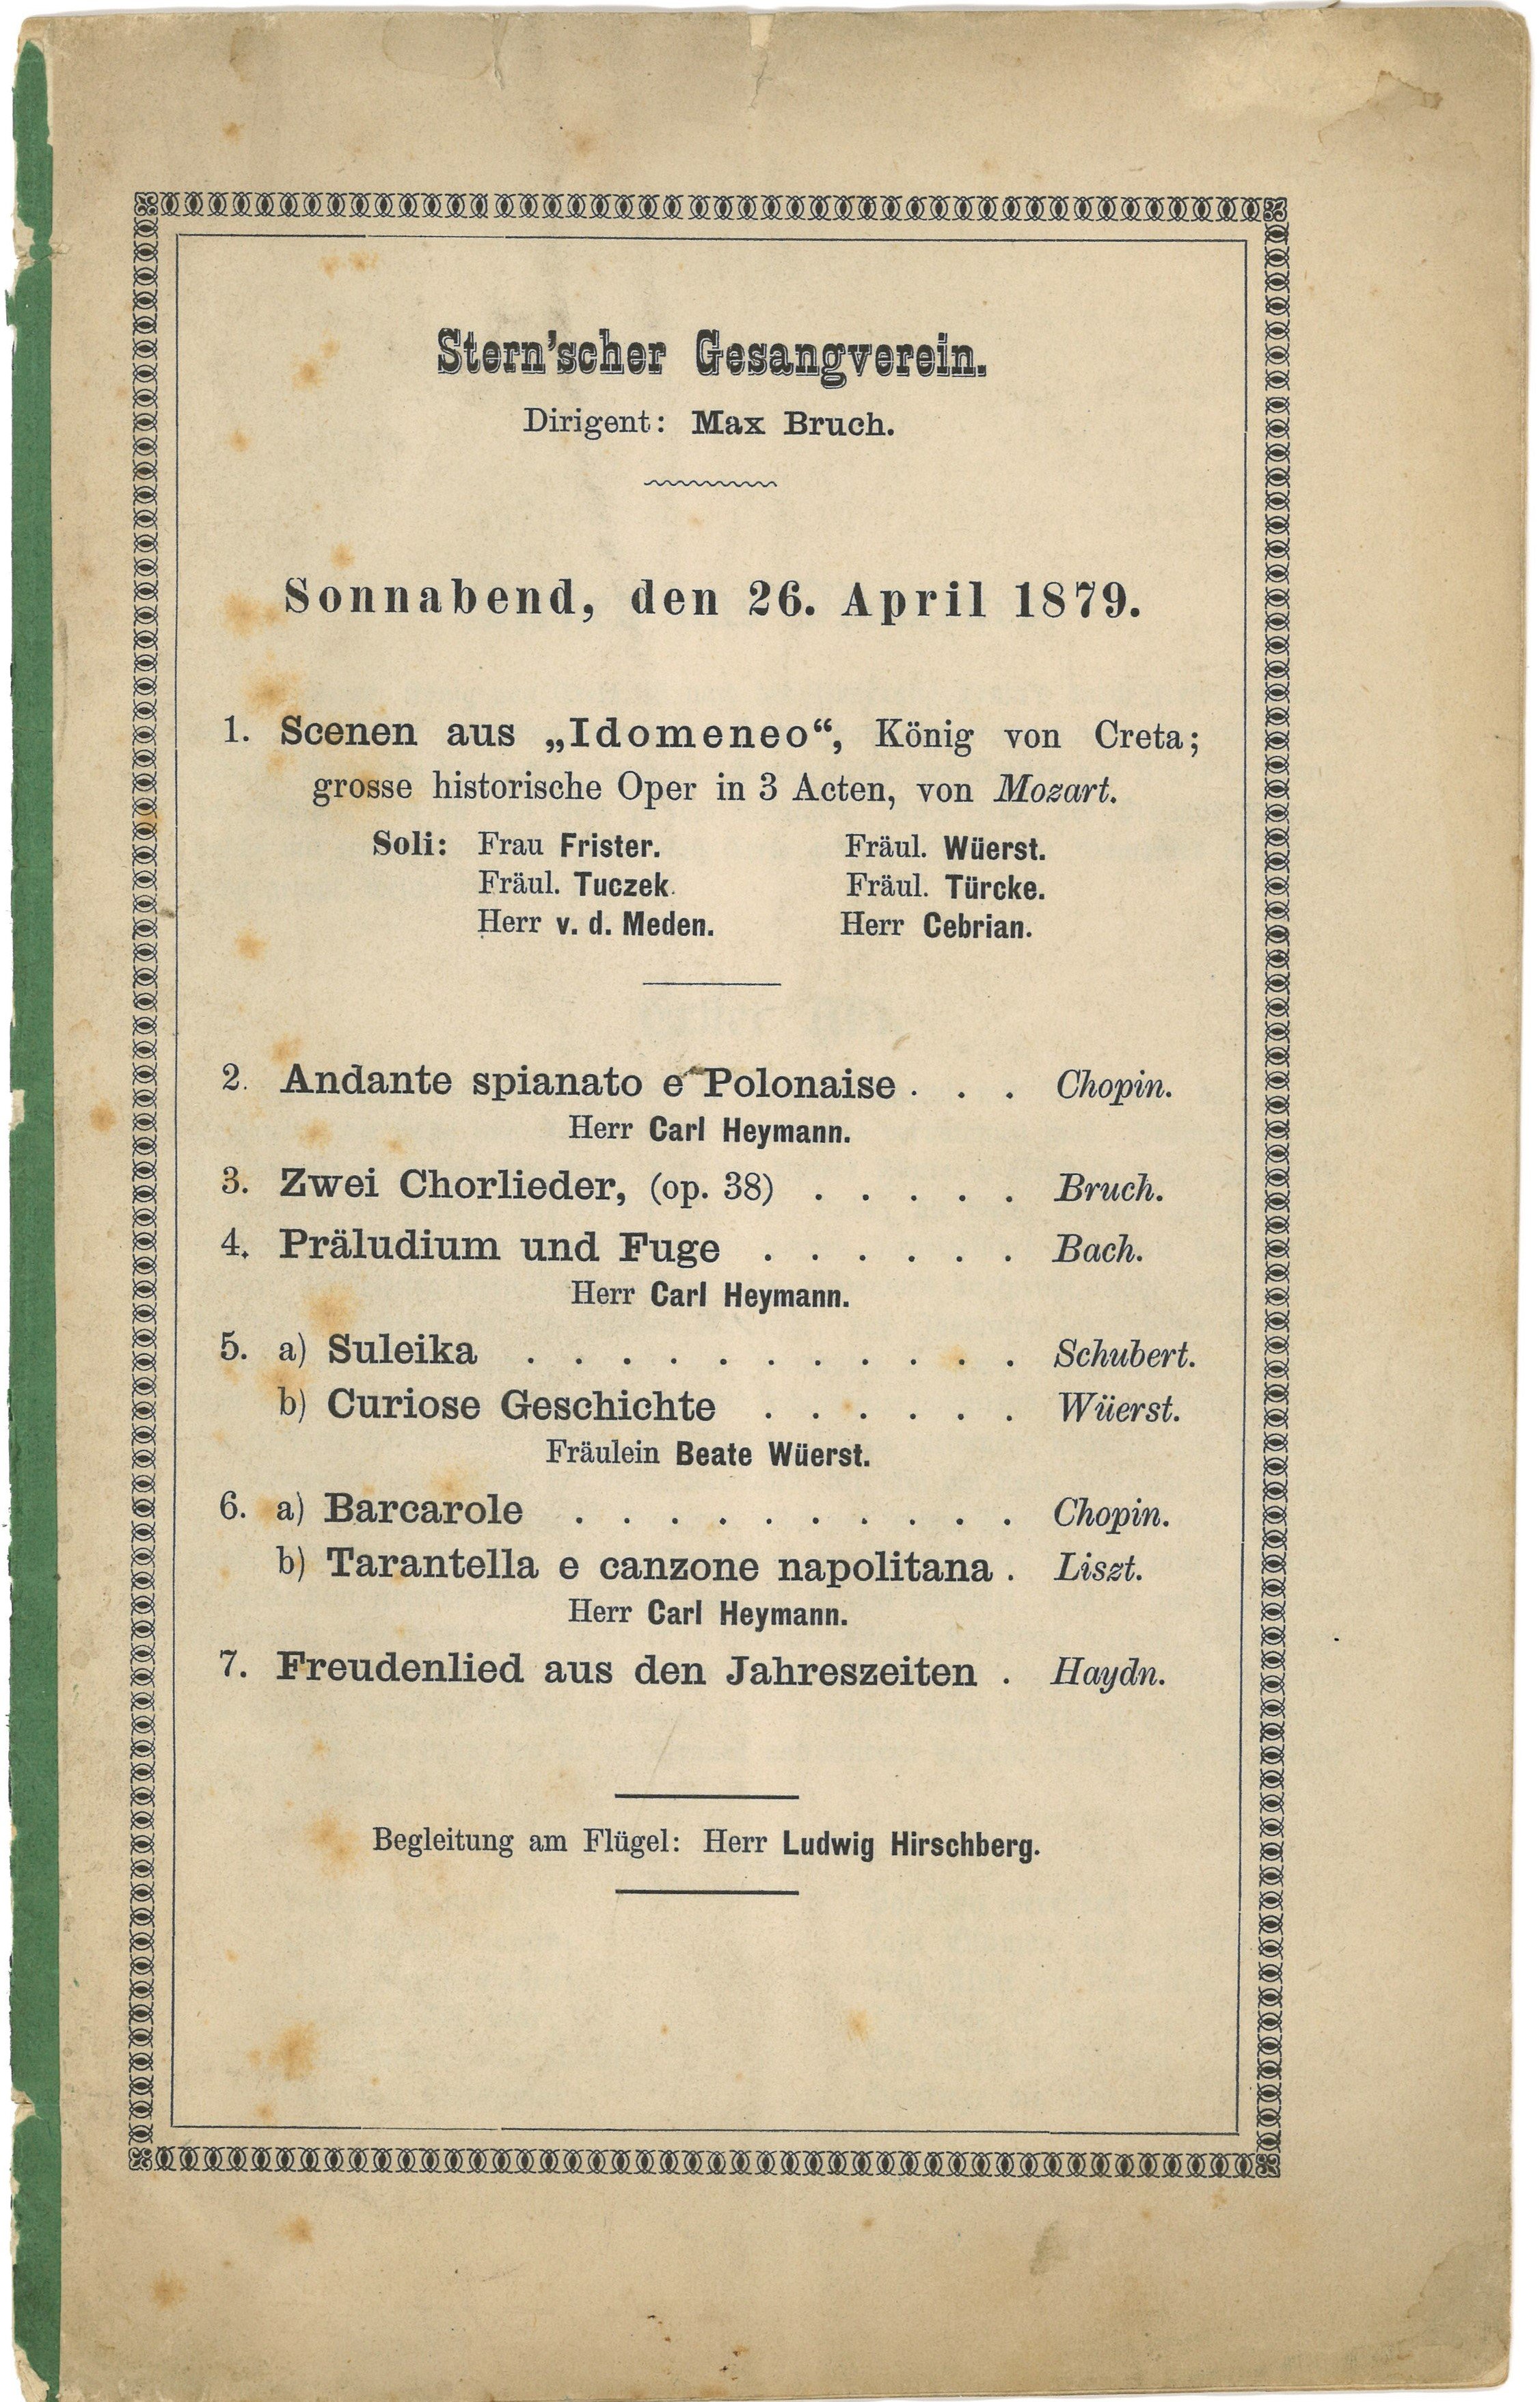 Programm zum Konzert des Stern'schen Gesangvereins in Berlin am 26. April 1879 (Landesgeschichtliche Vereinigung für die Mark Brandenburg e.V., Archiv CC BY)